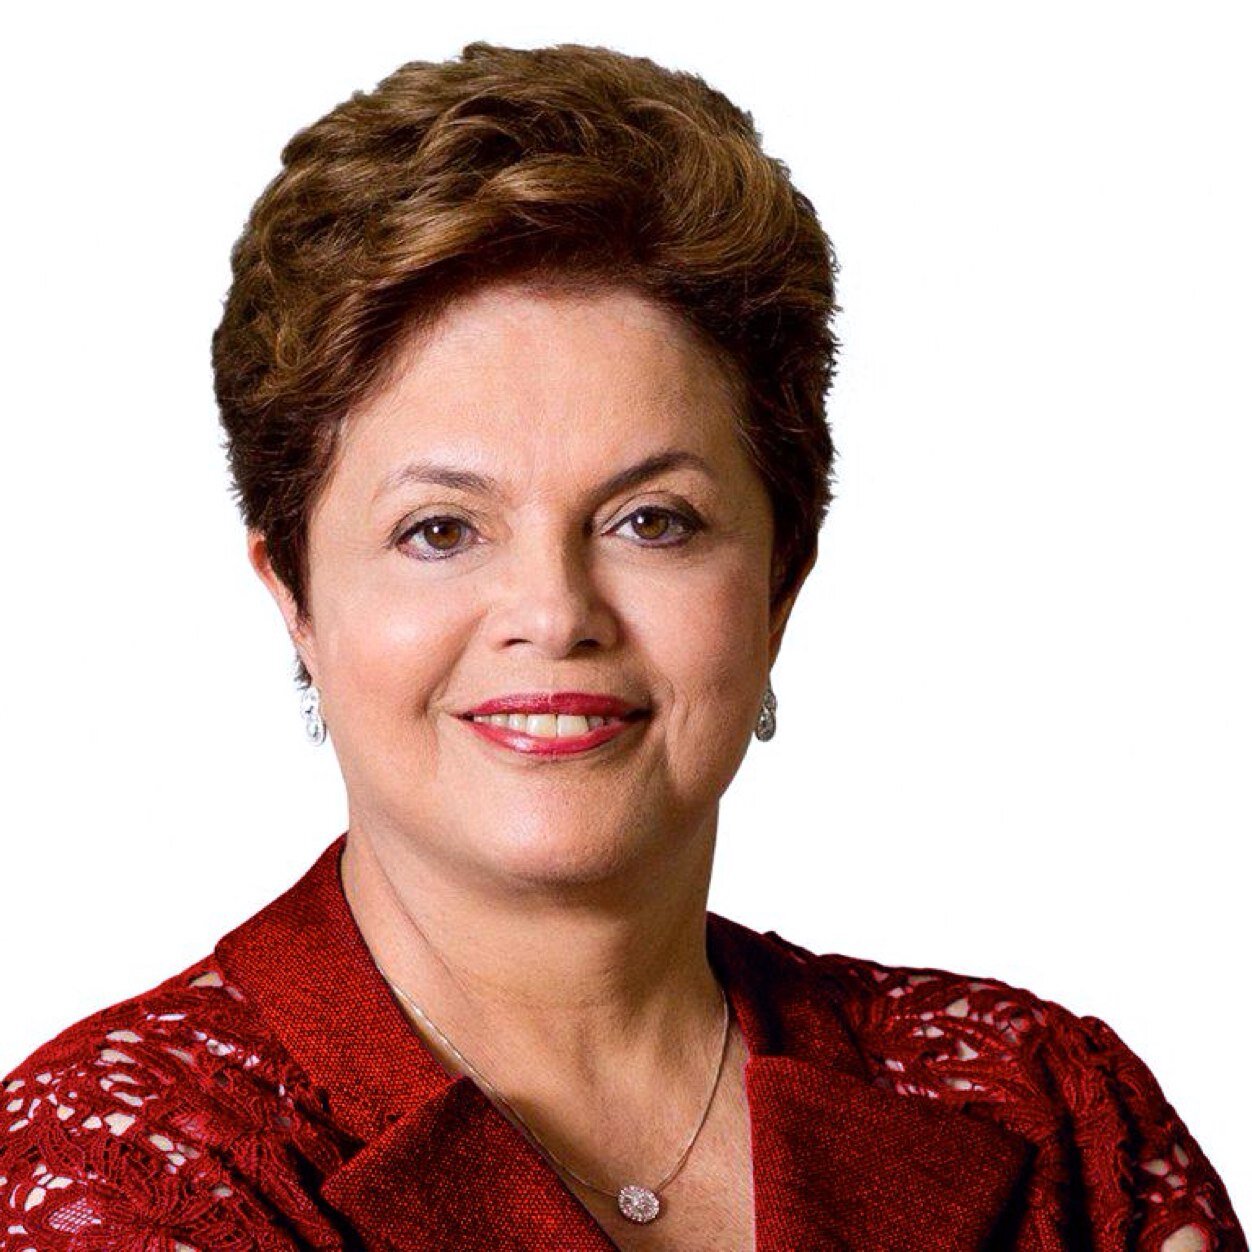 Contas da campanha de Dilma em 2010 sero investigadas pela 